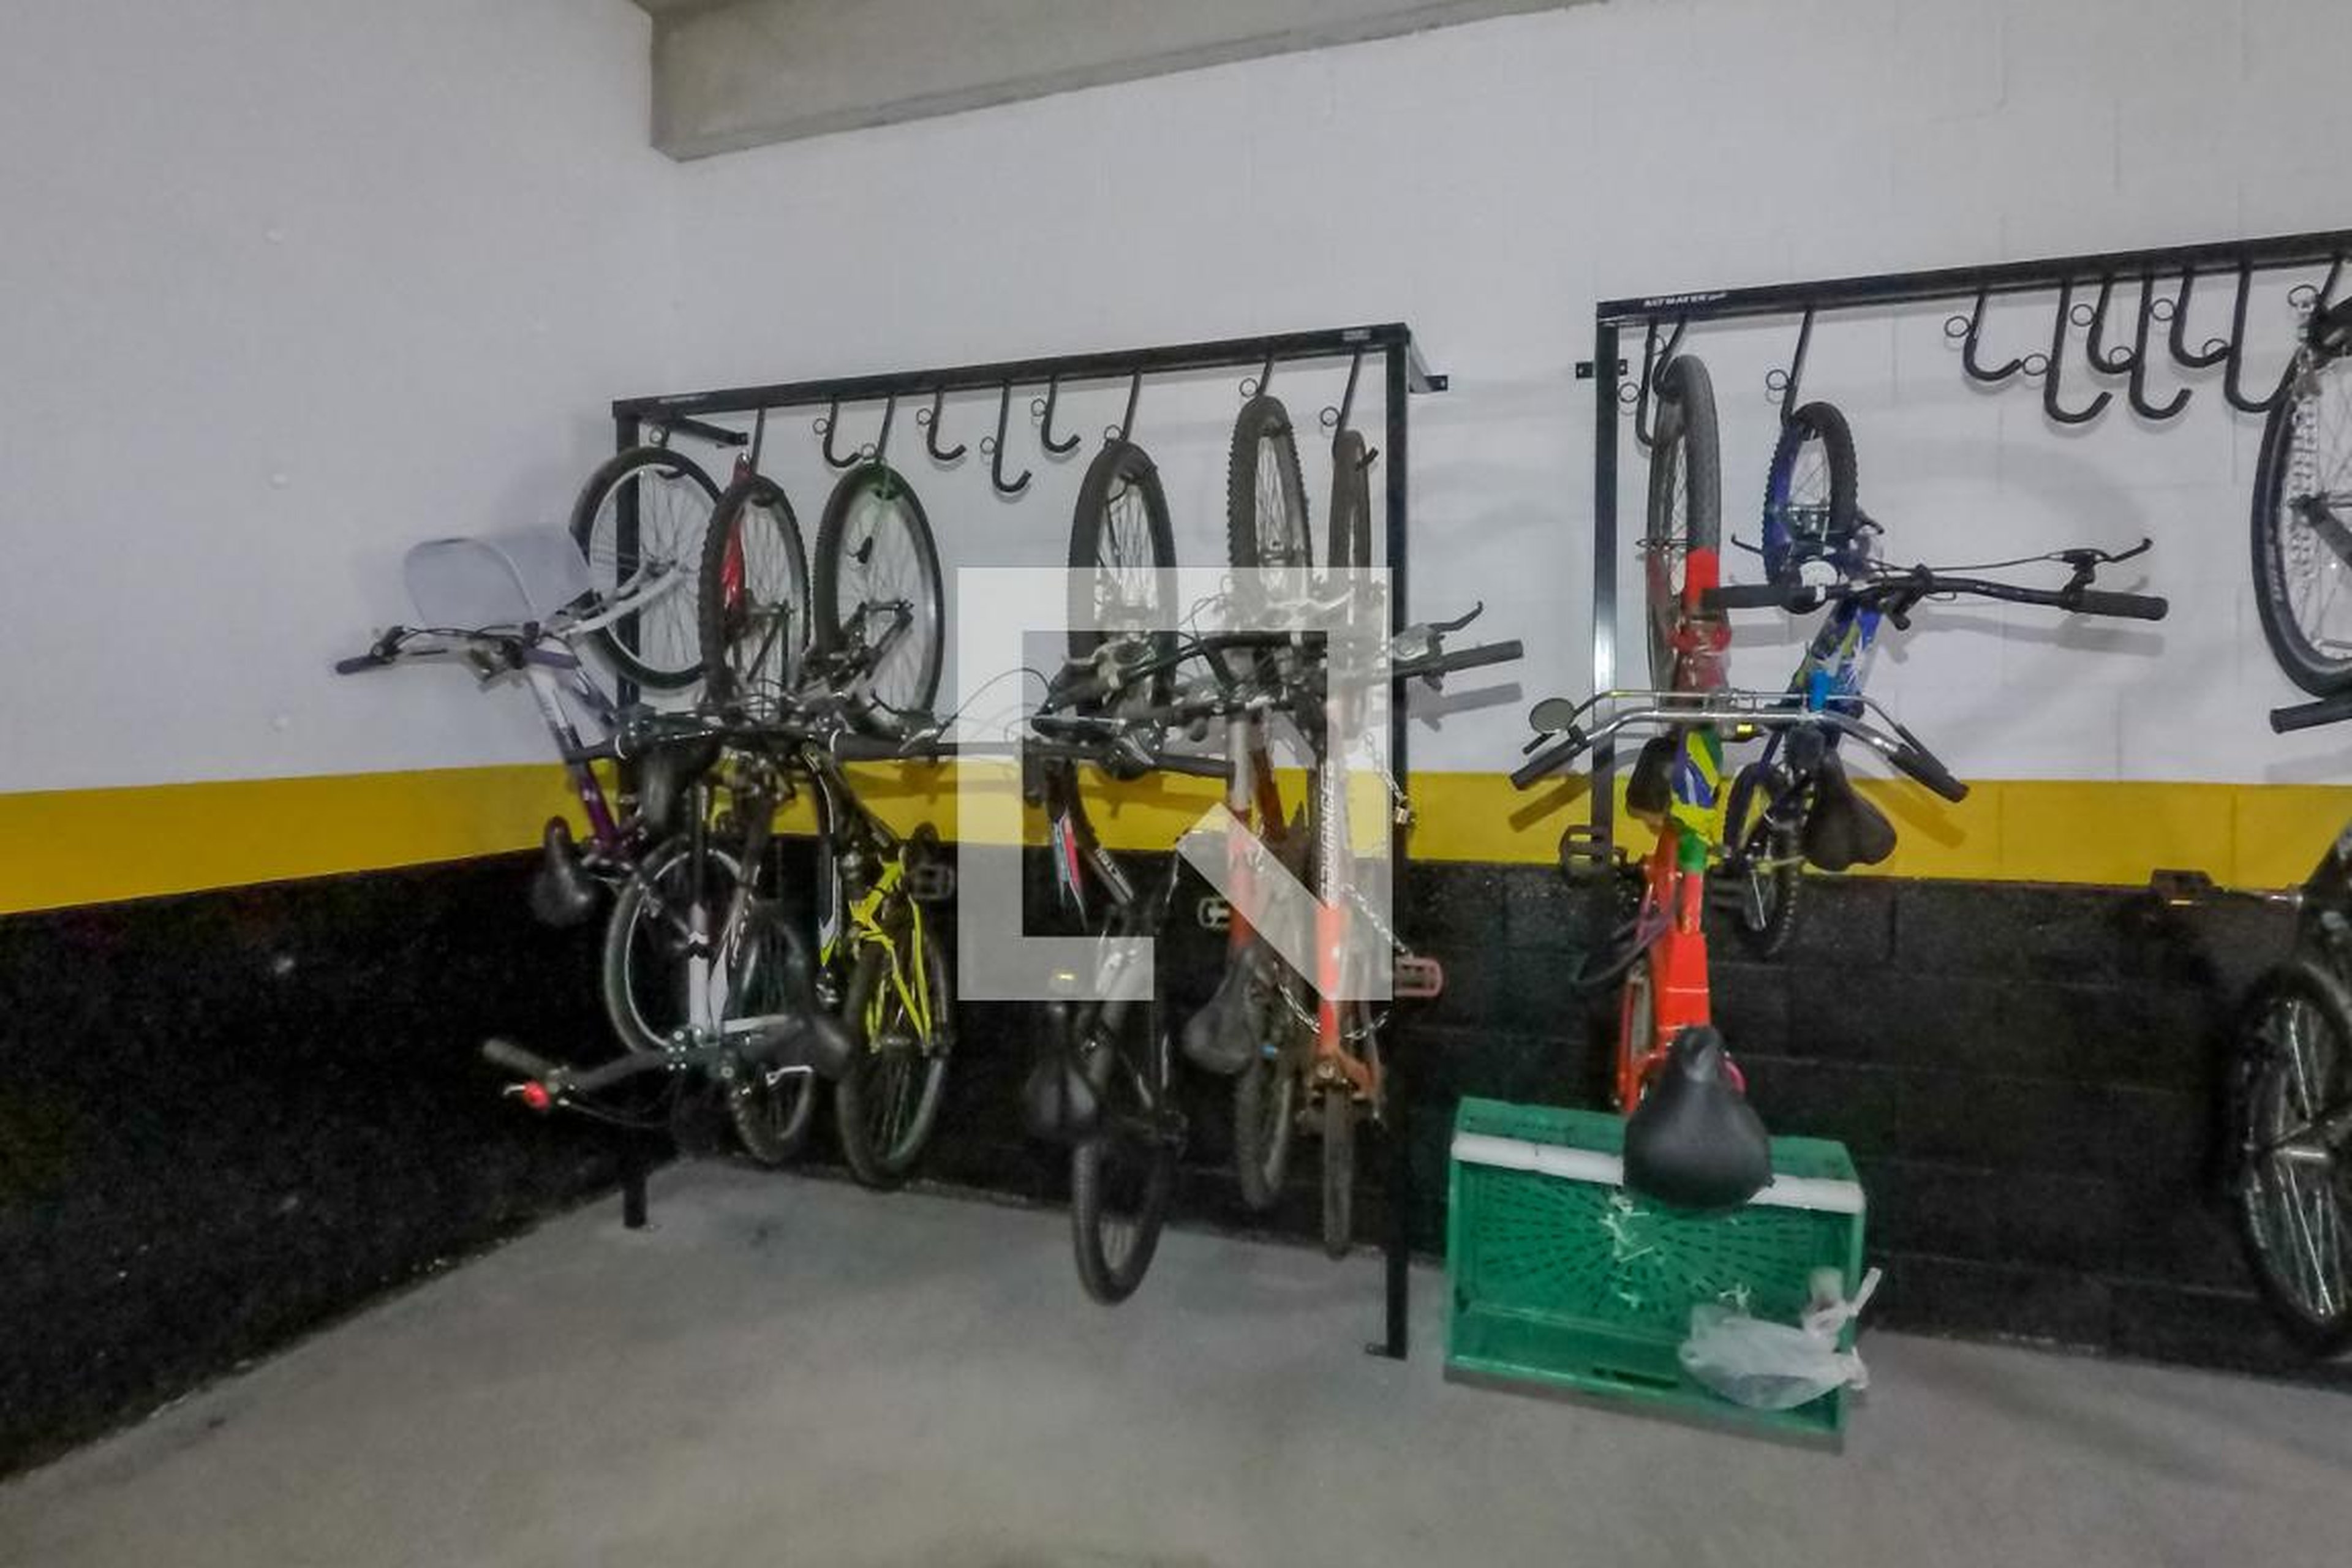 bicicletario - Viva Benx Cambuci I